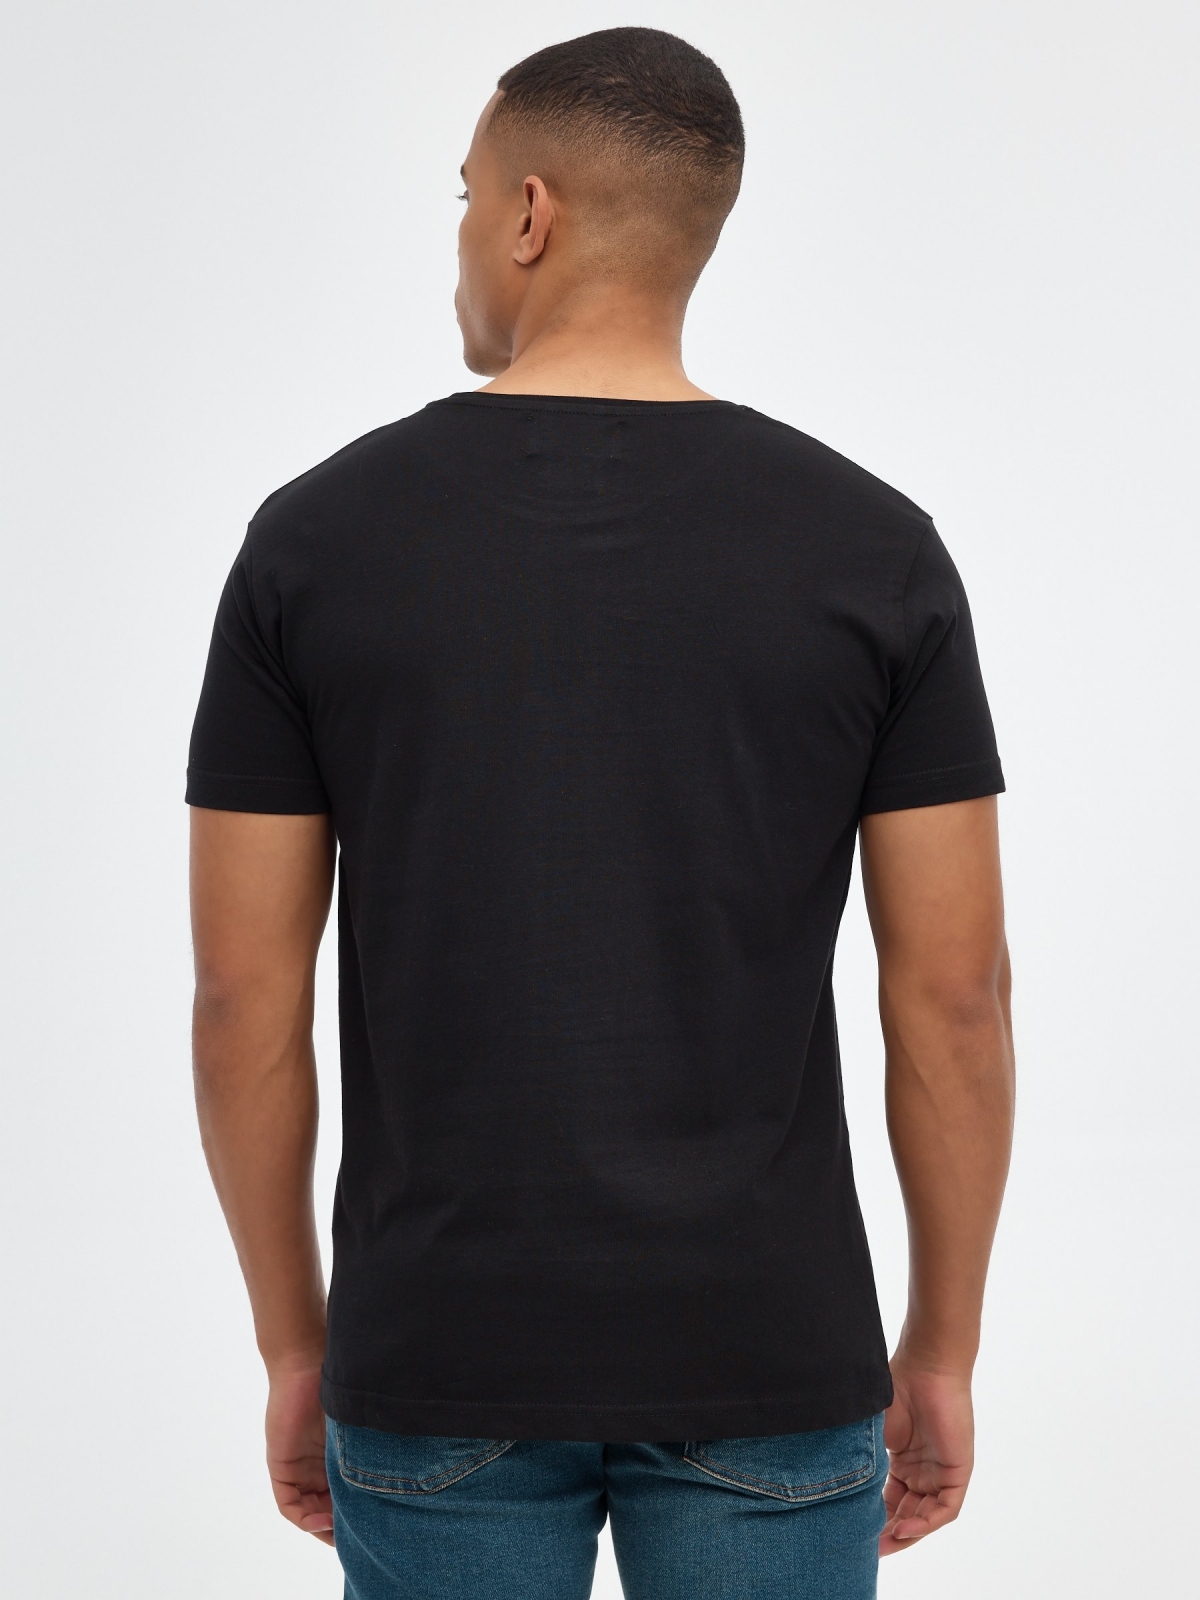 Camiseta básica "INSIDE" negro vista media trasera